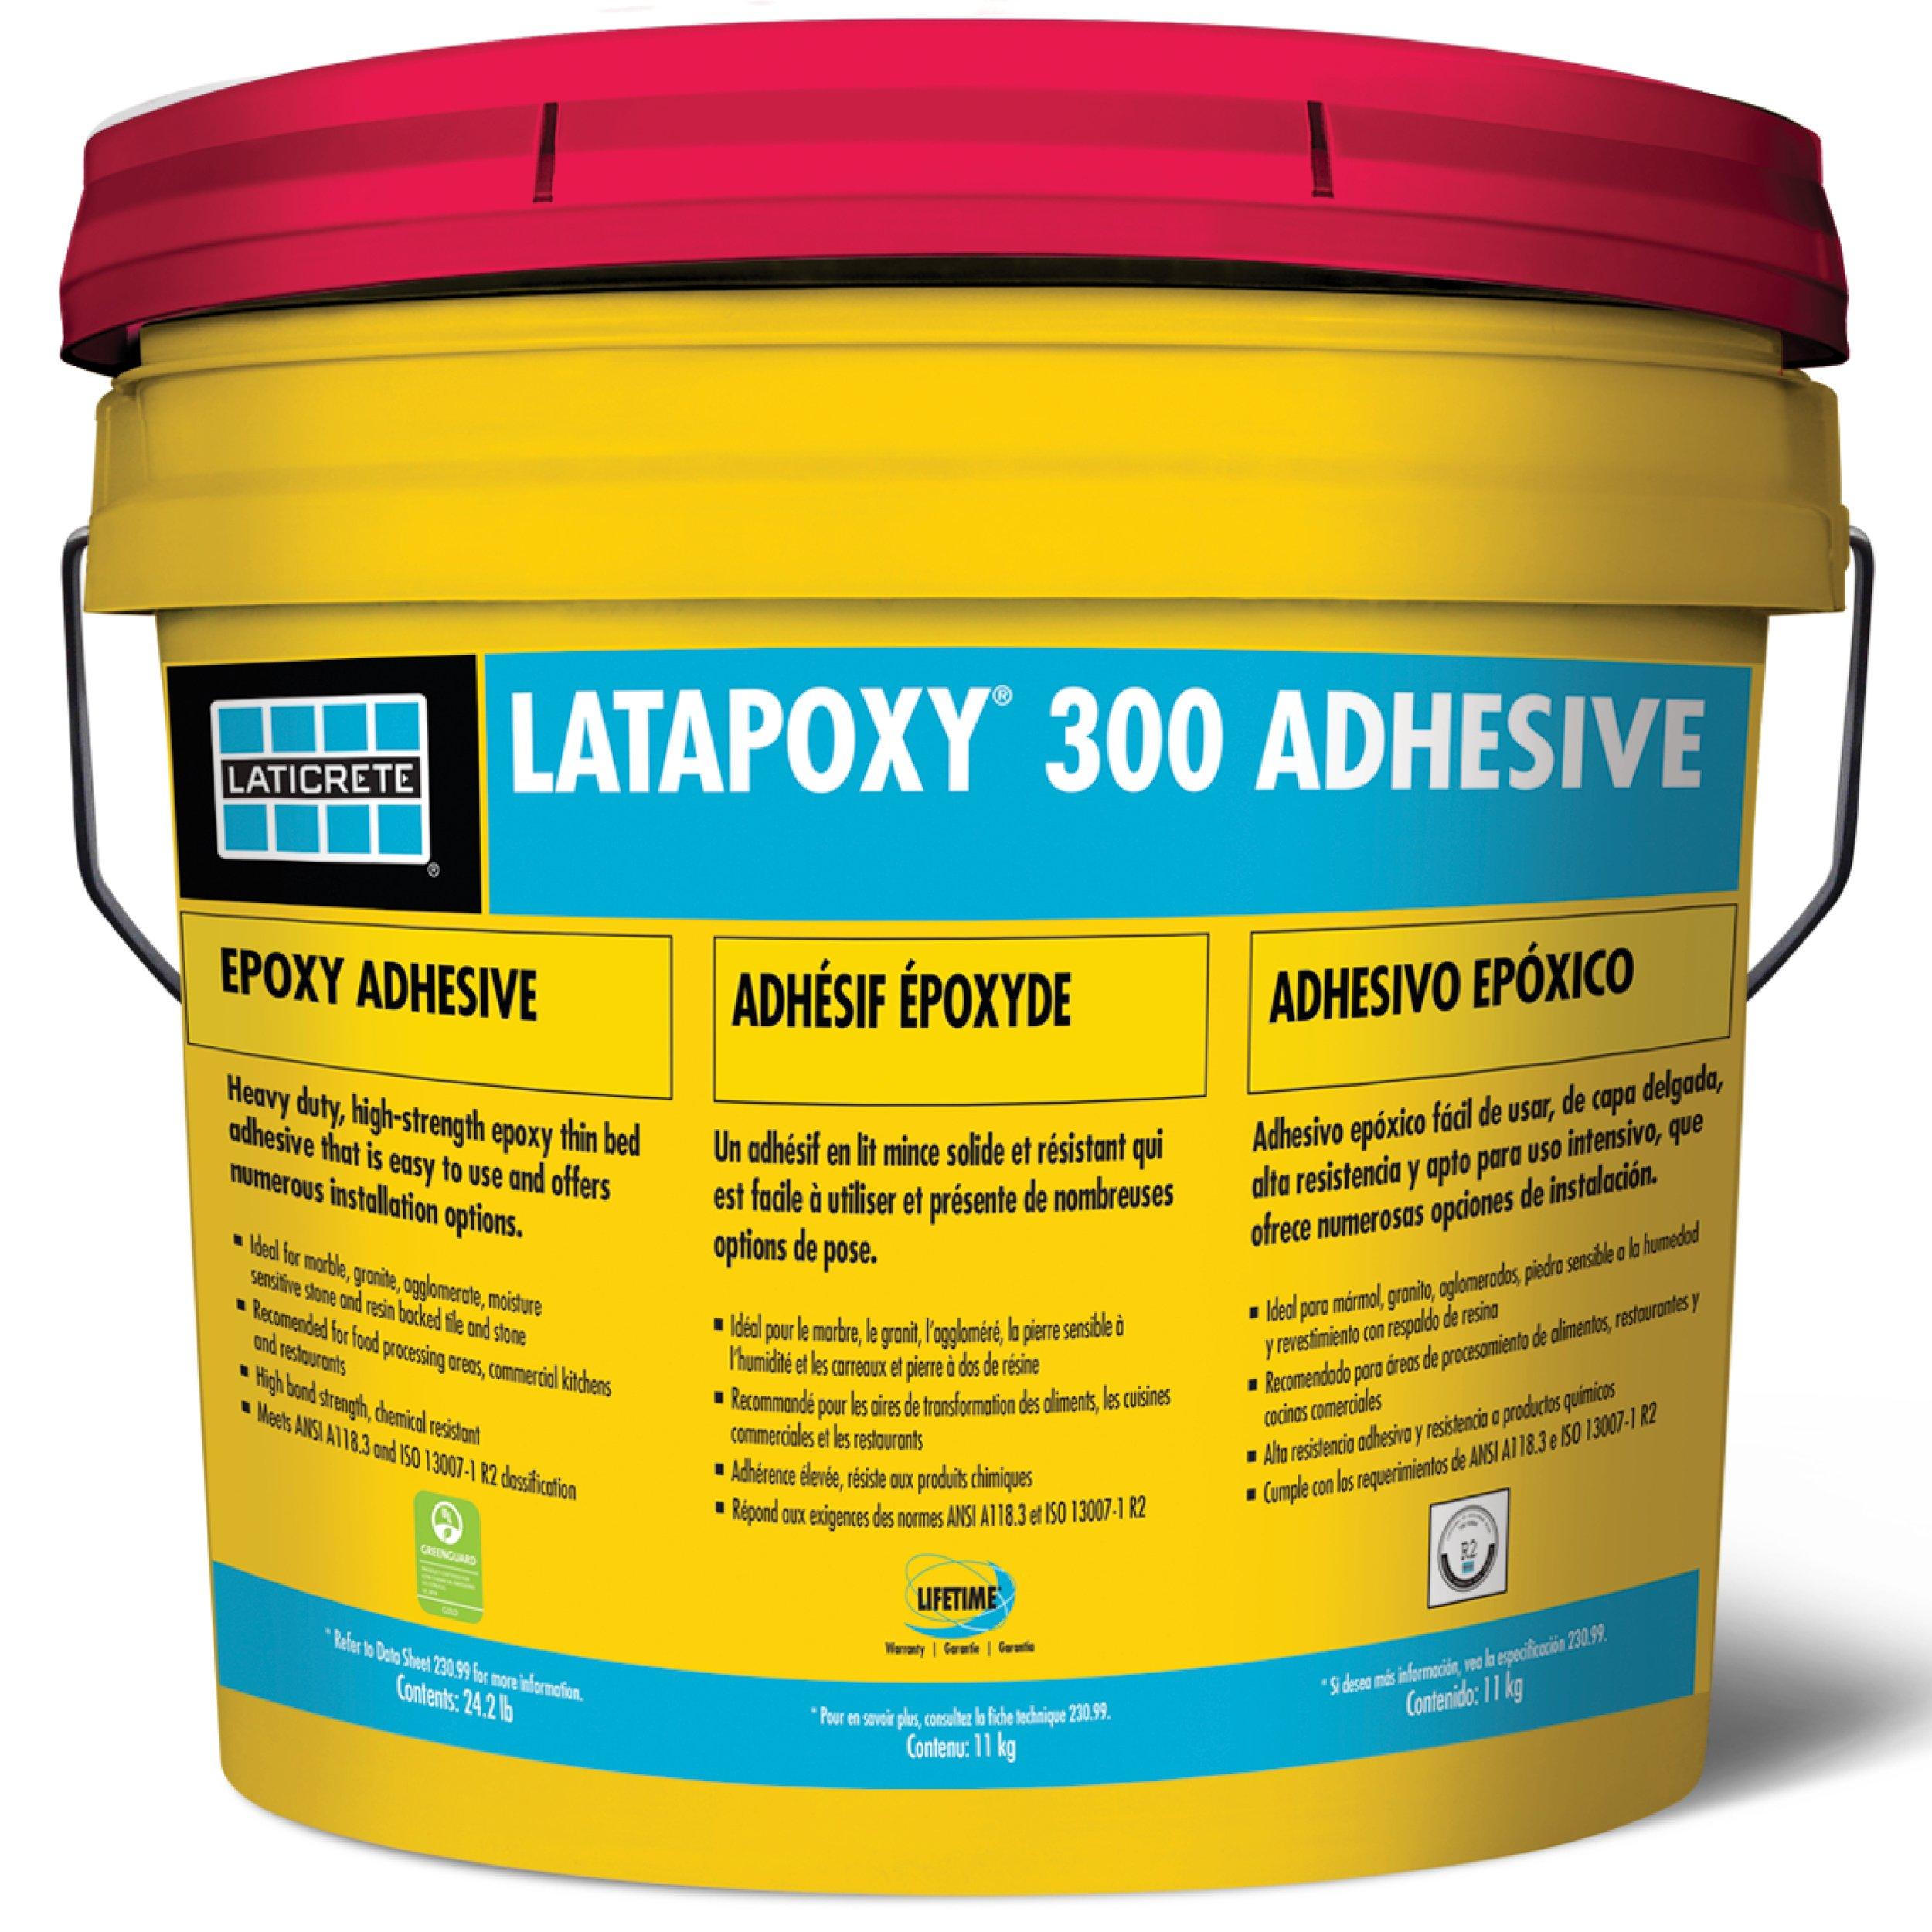 Laticrete Latapoxy 300 Adhesive